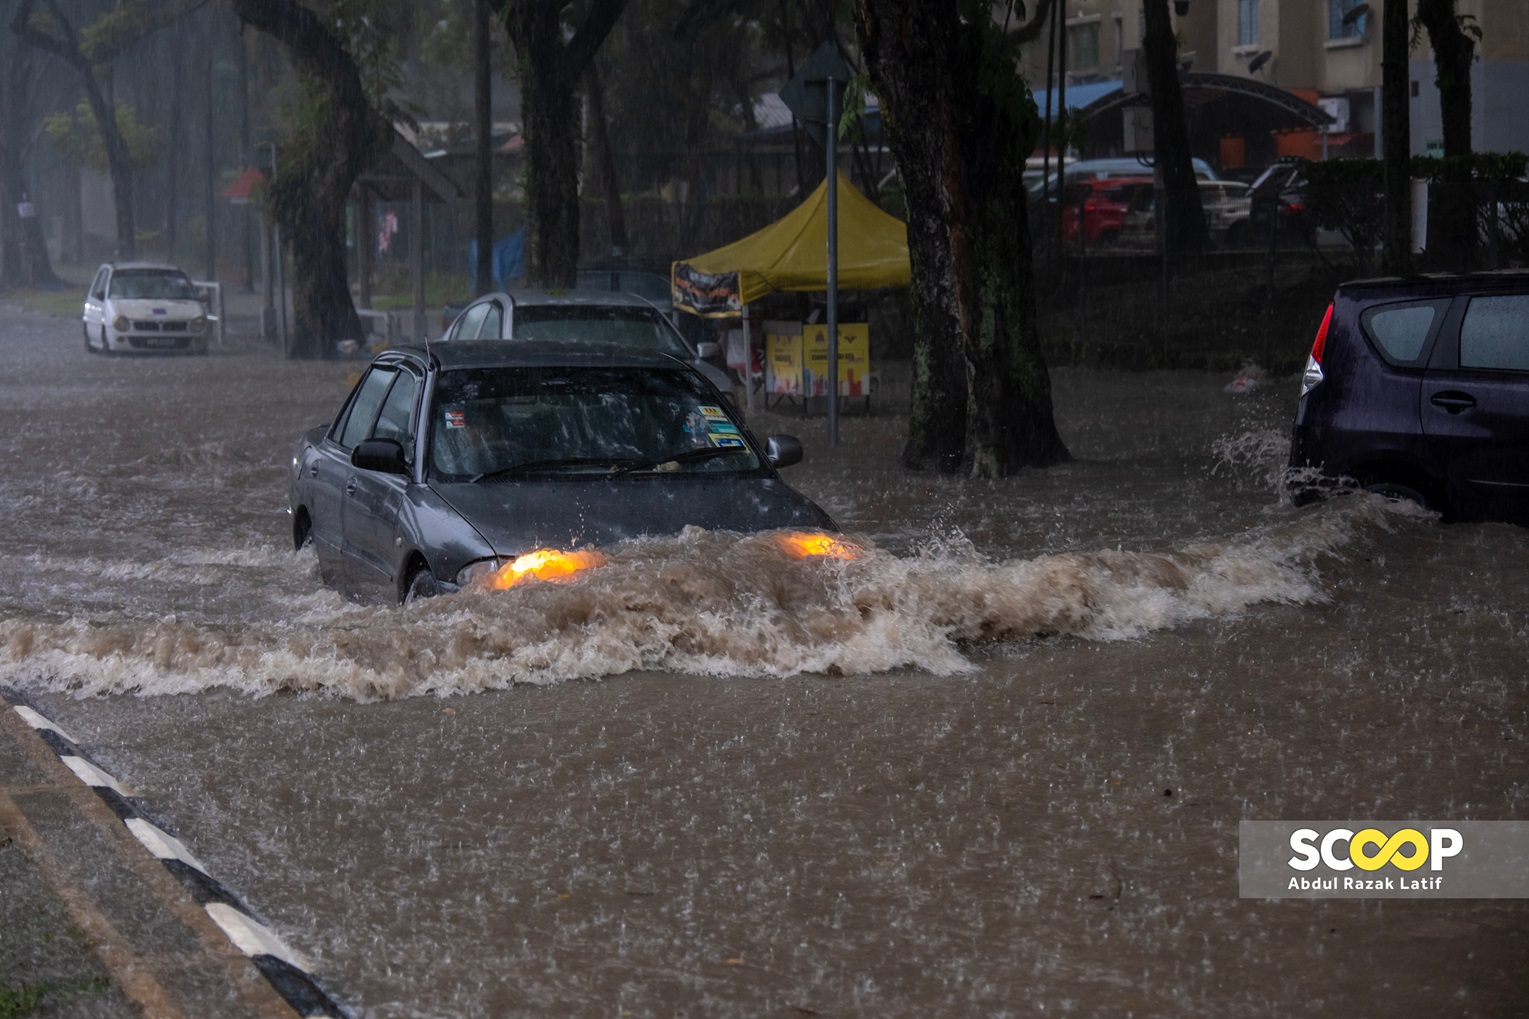 Flash floods cause gridlock along Shah Alam's Persiaran Mokhtar Dahari